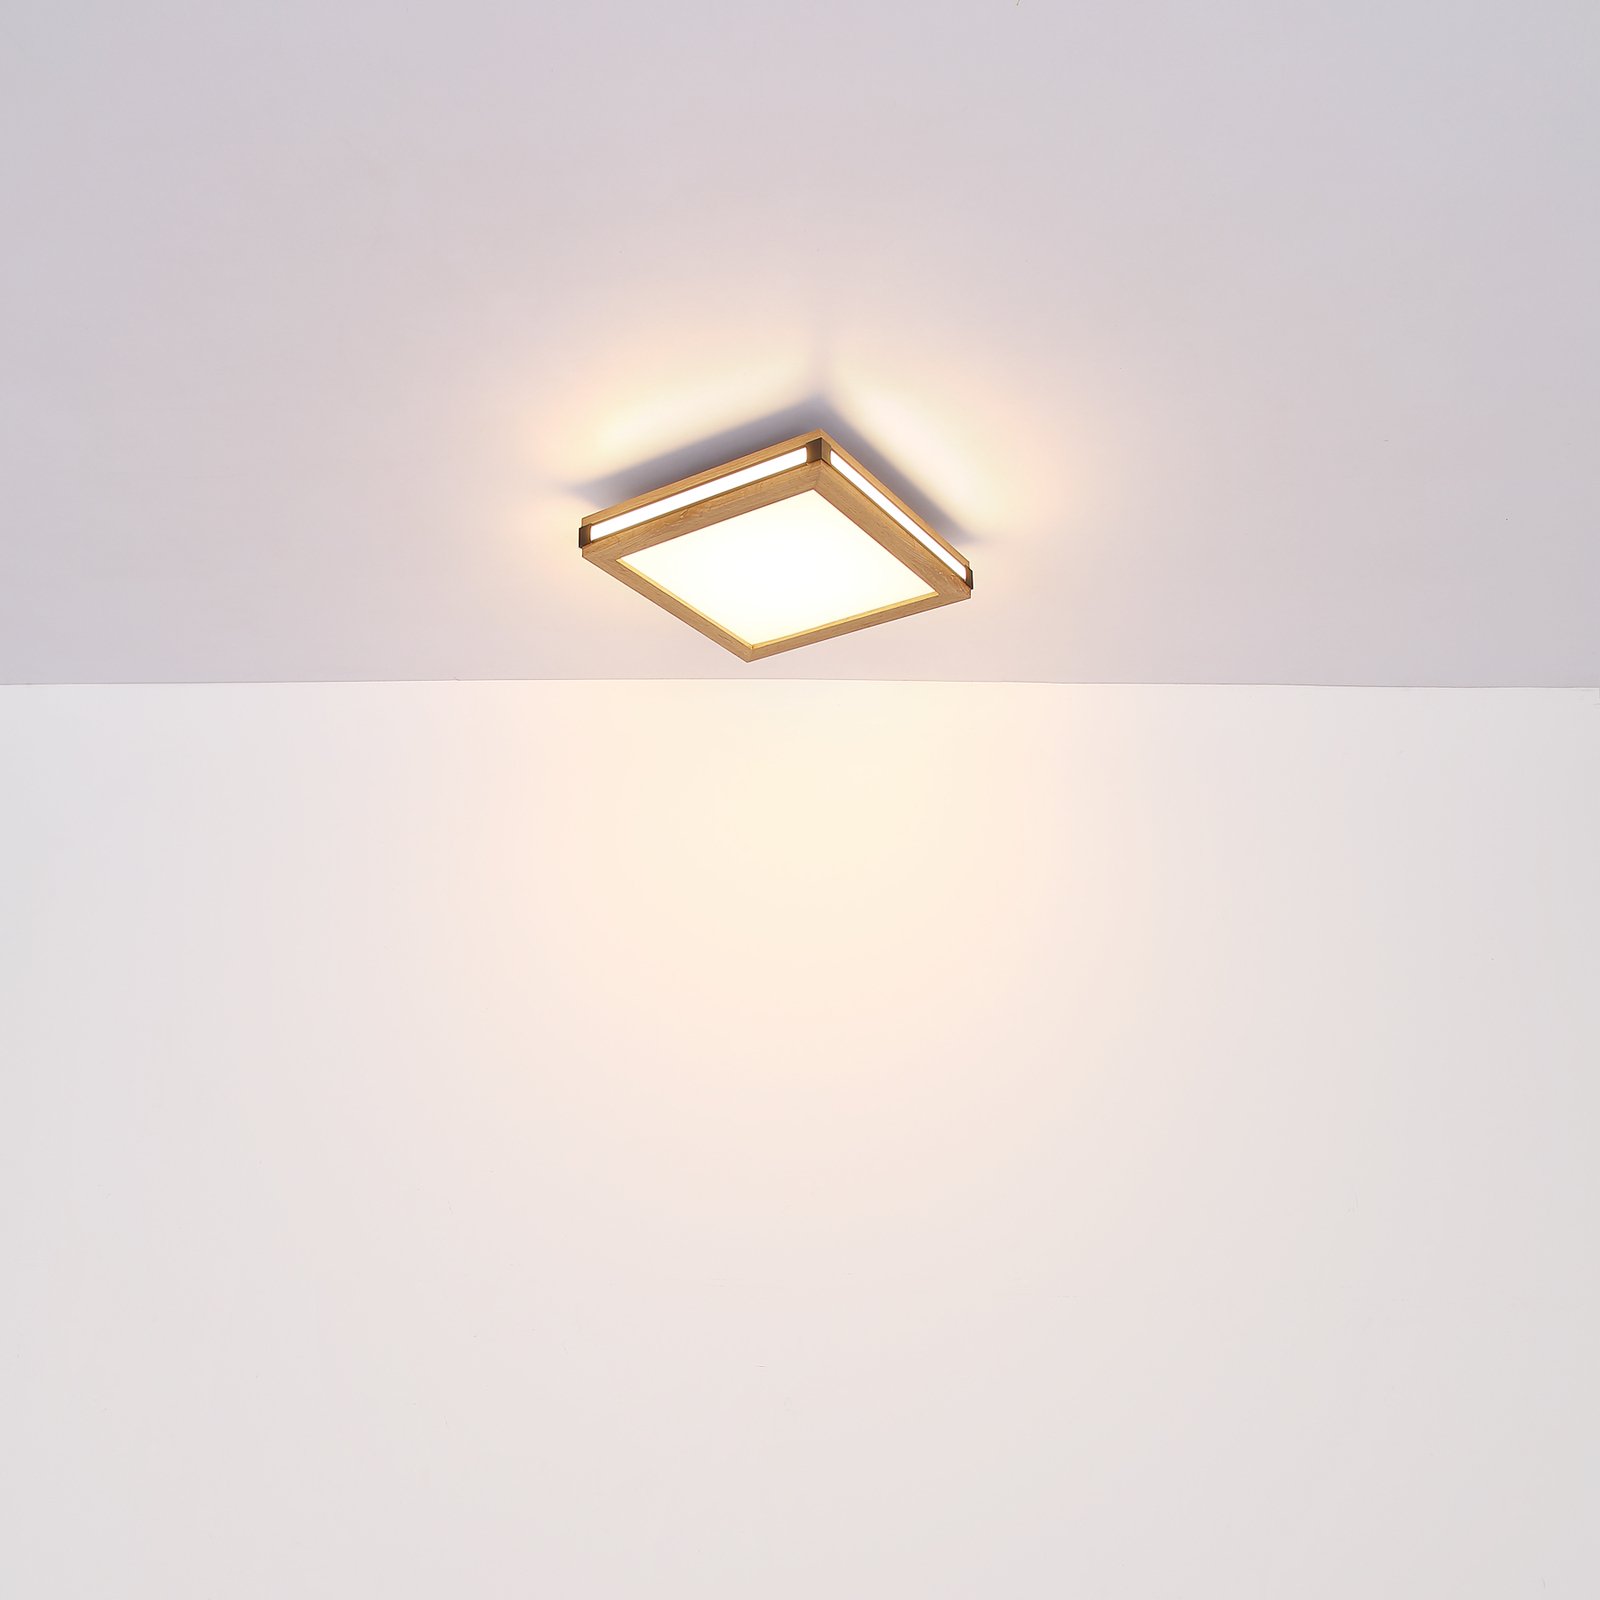 LED ceiling light Karla square 30x30 cm